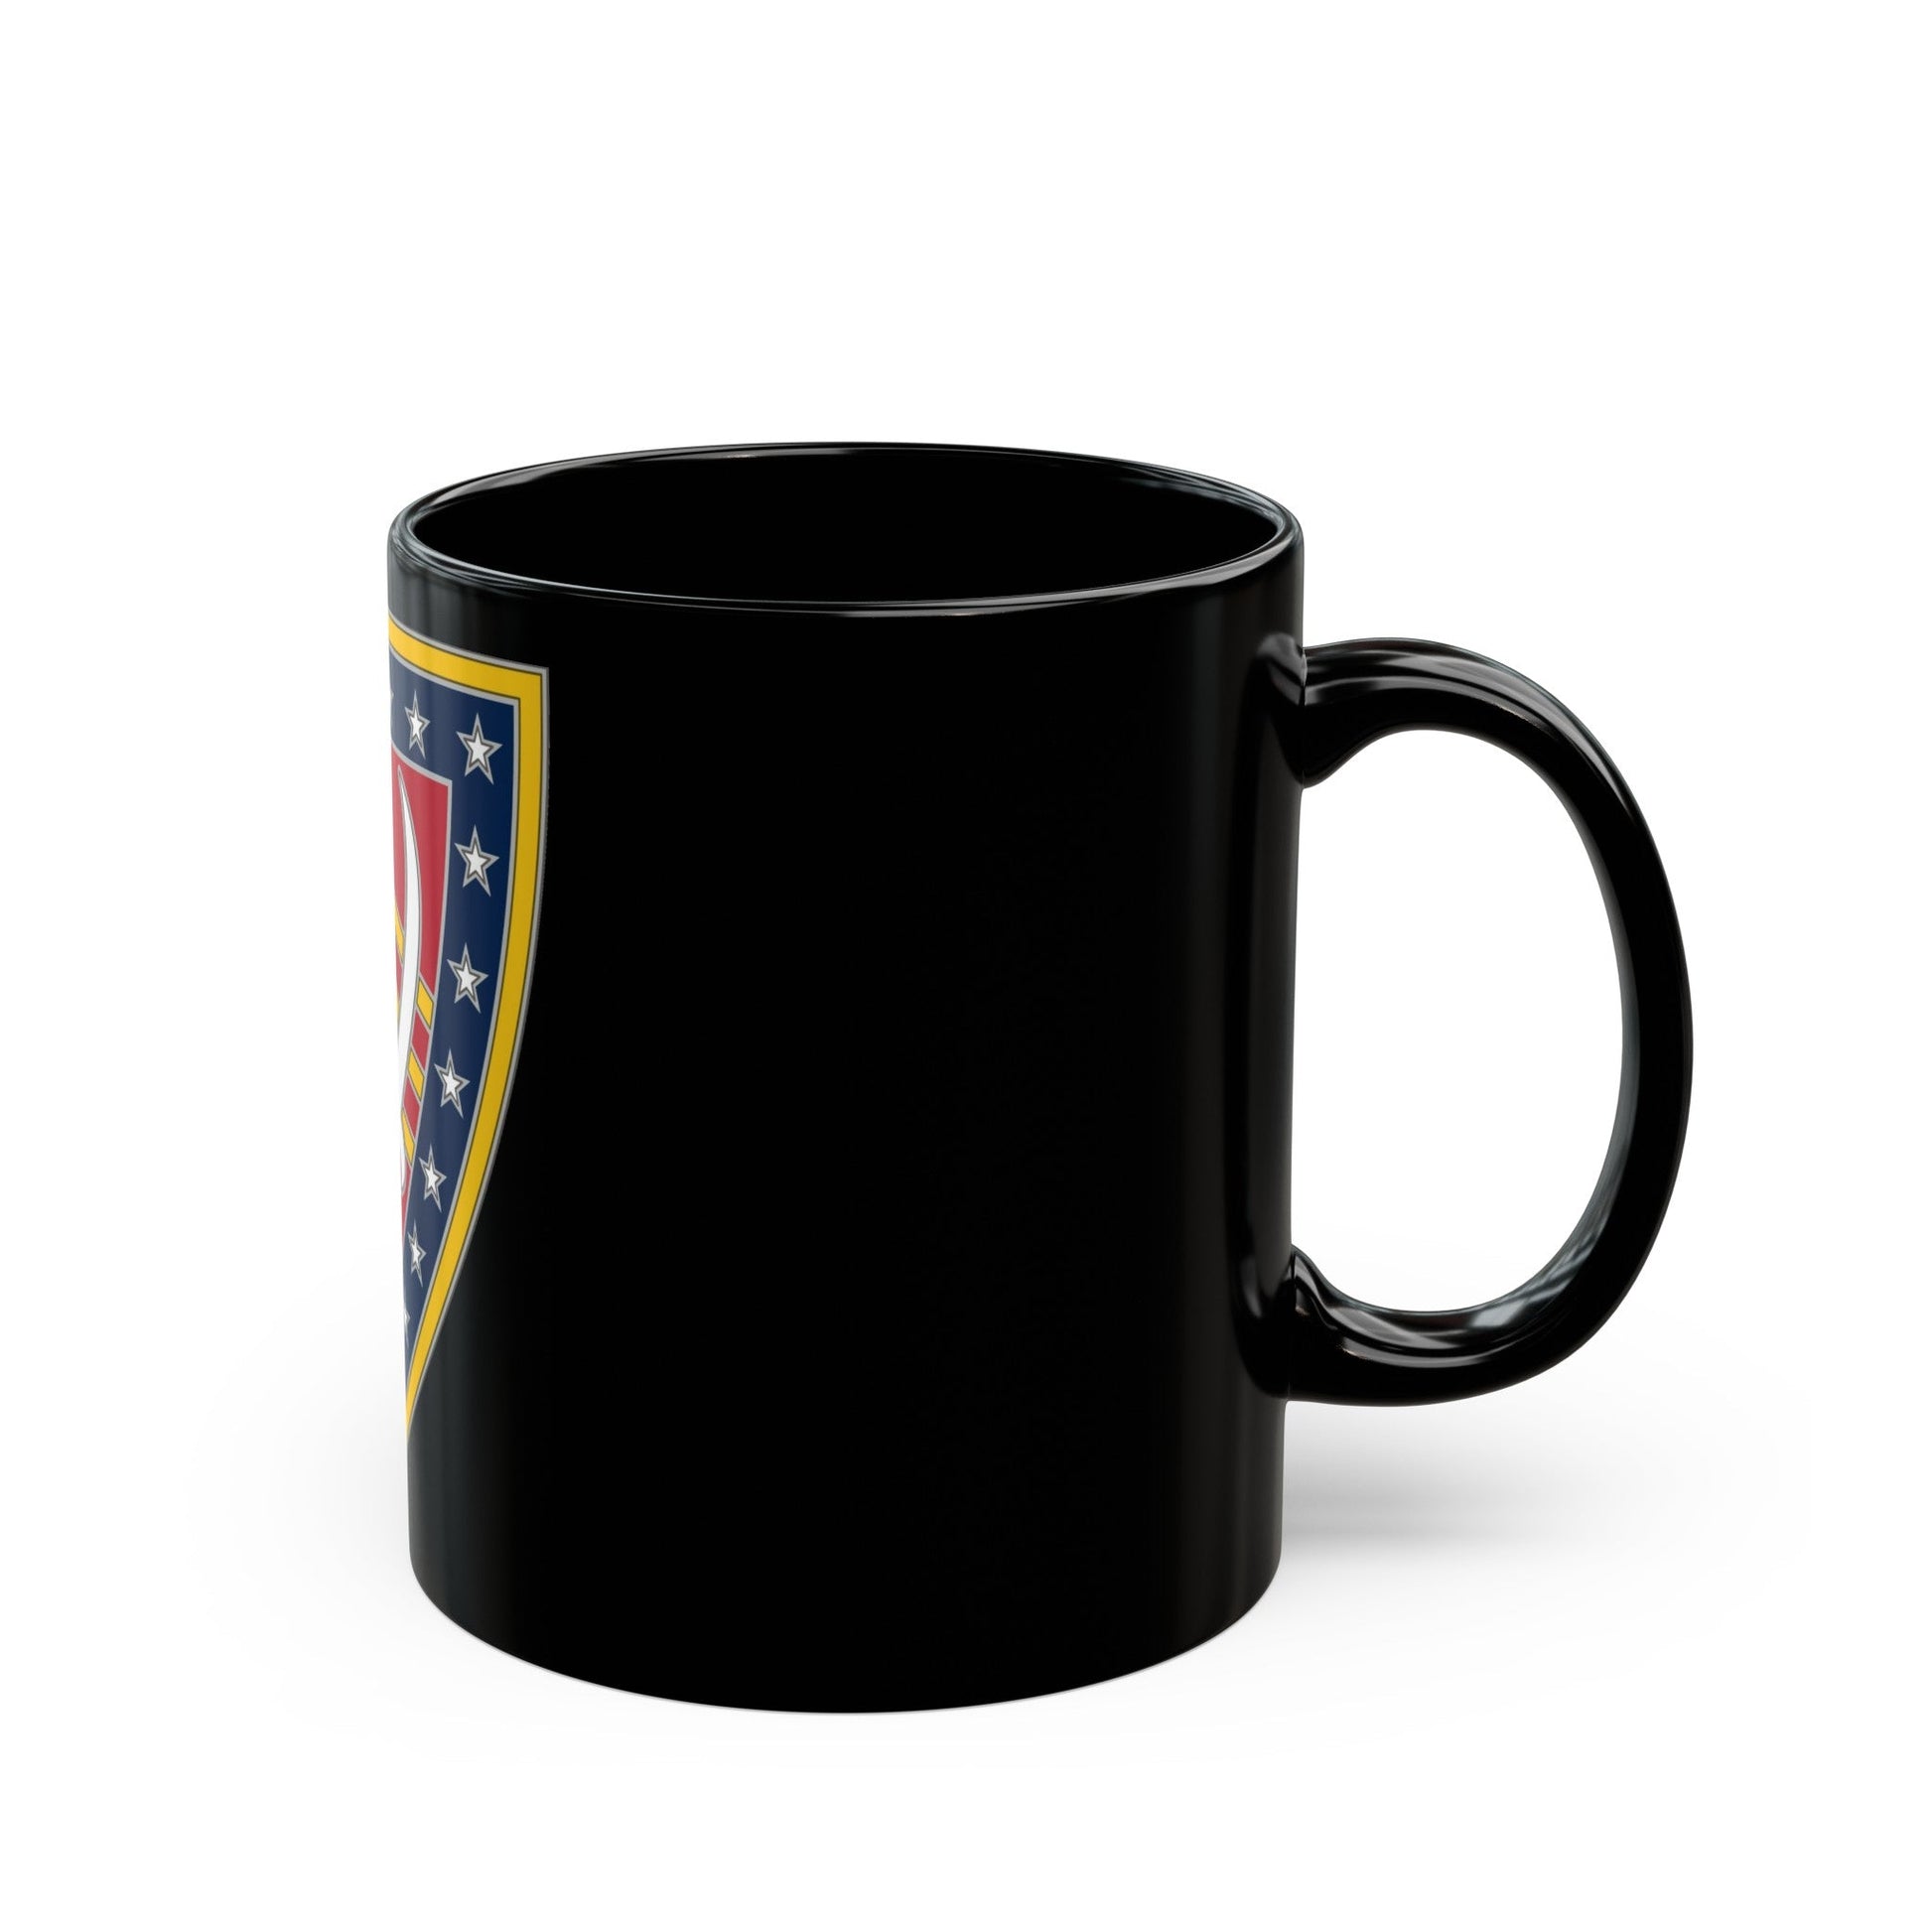 38 Sustainment Brigade (U.S. Army) Black Coffee Mug-The Sticker Space